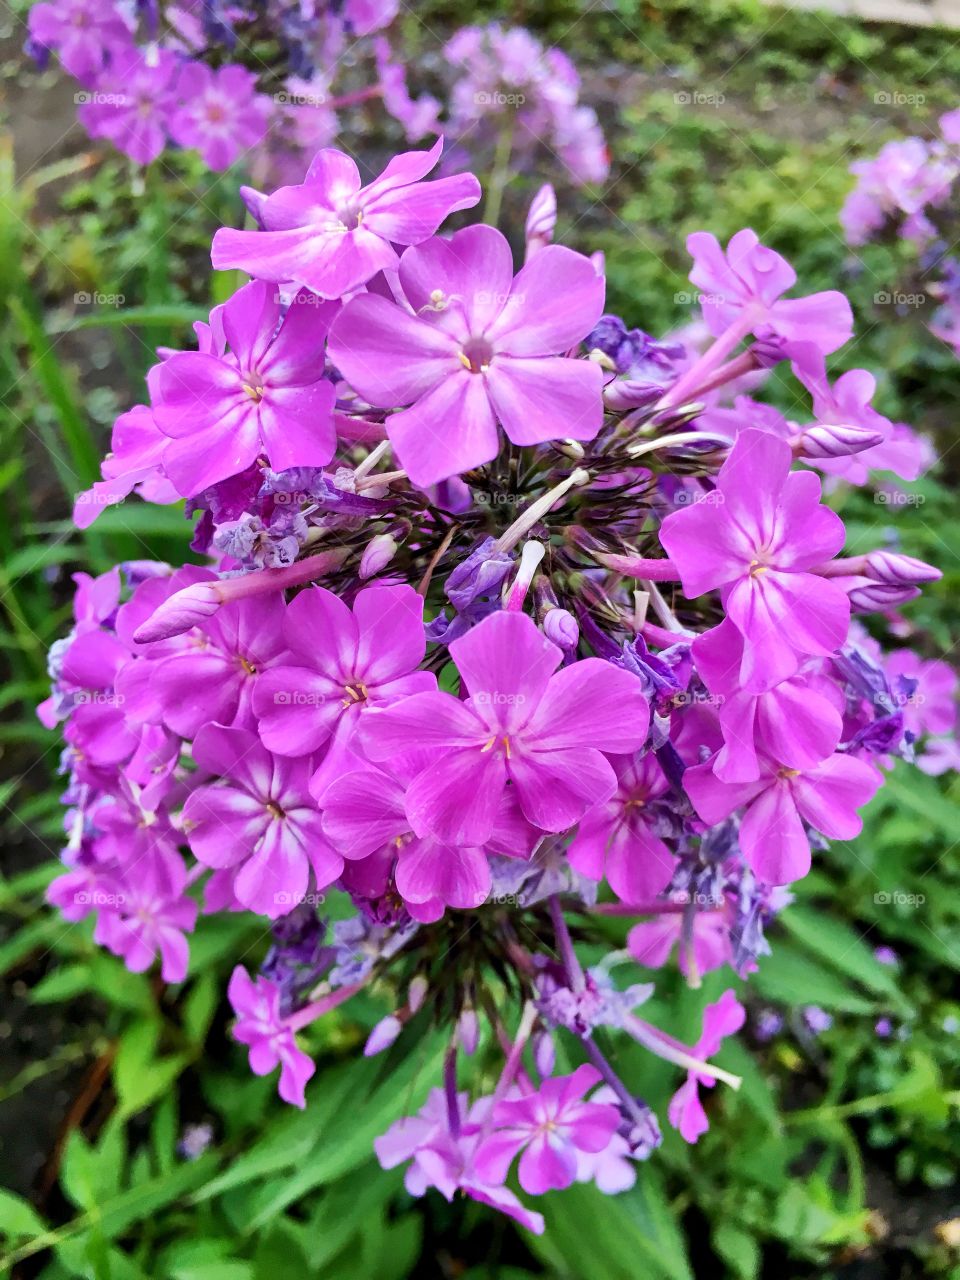 Pink violet looking flowers